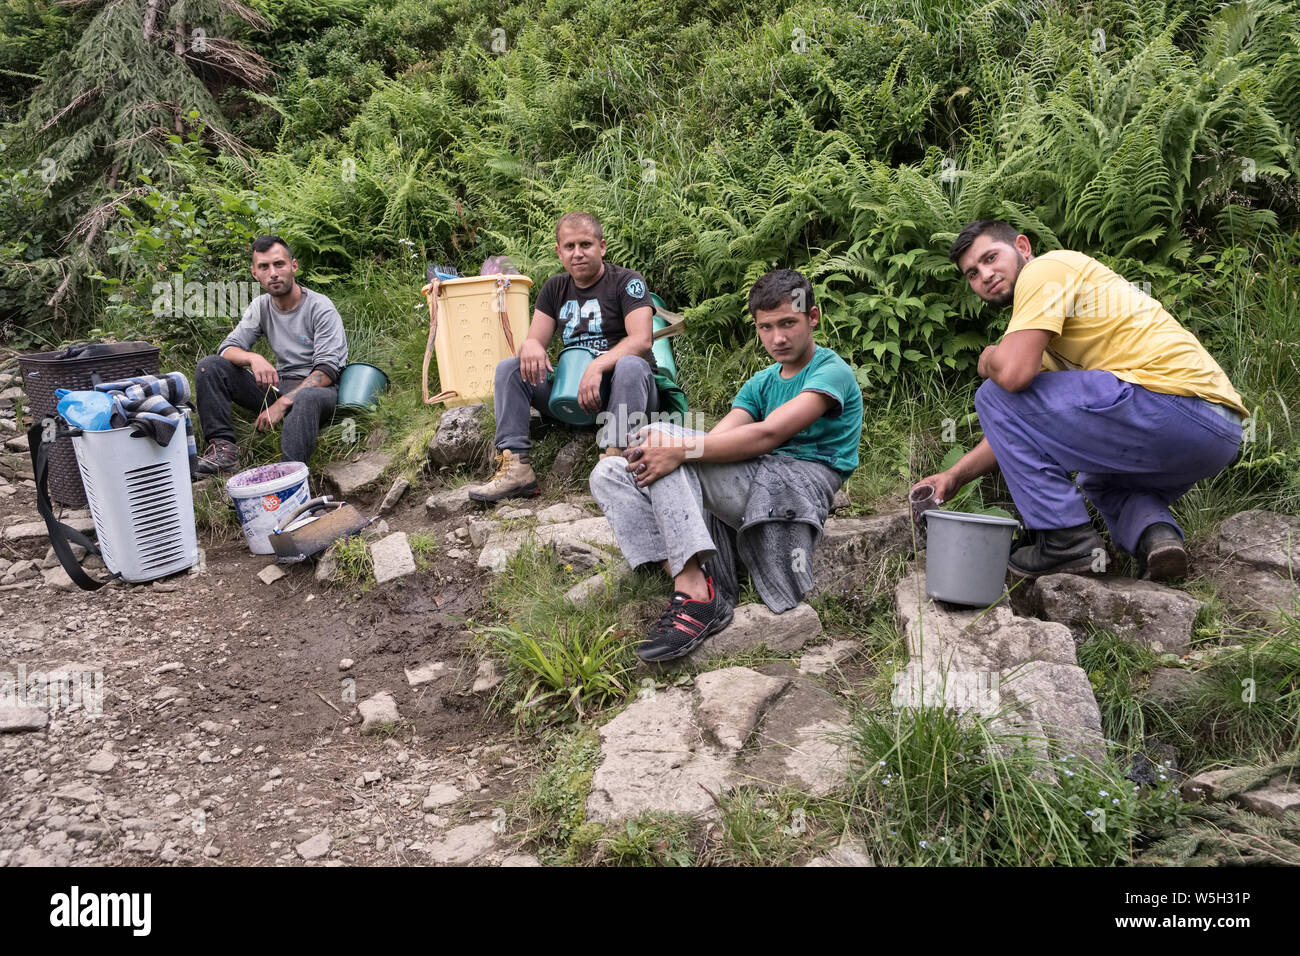 Satu Mare, Rumänien - in den Bergen eine Gruppe von Roma (Zigeuner) Männer Kommissionierung wilde Heidelbeeren (whinberries, Europäische Heidelbeeren) auf dem Markt zu verkaufen. Stockfoto